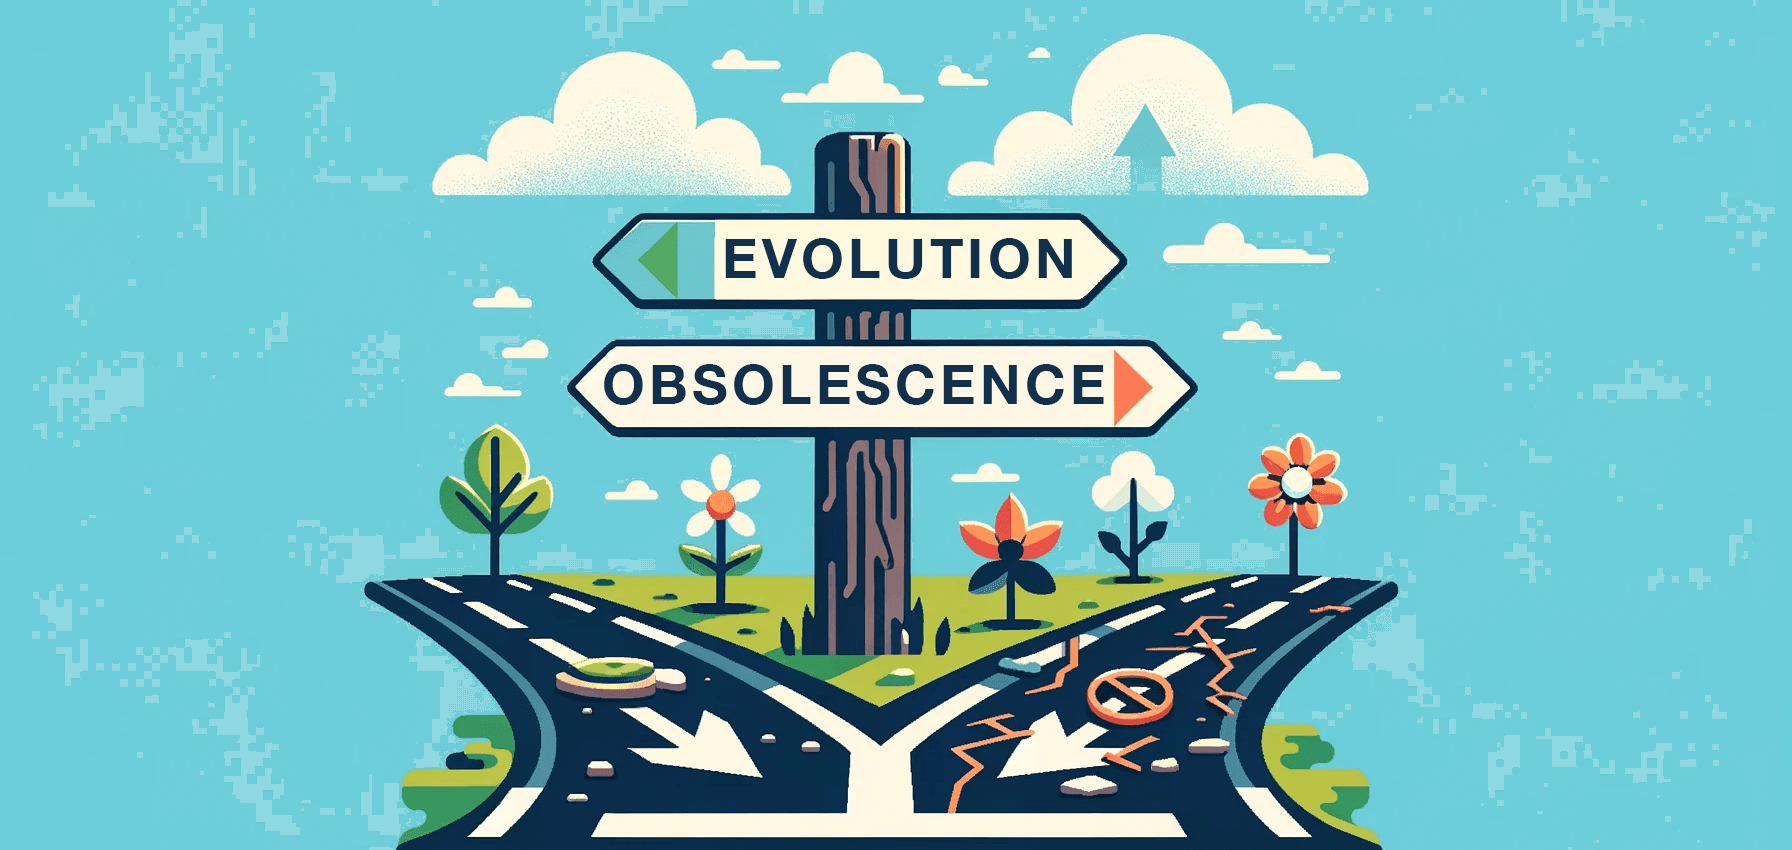 Evolution_Obsolescence.png